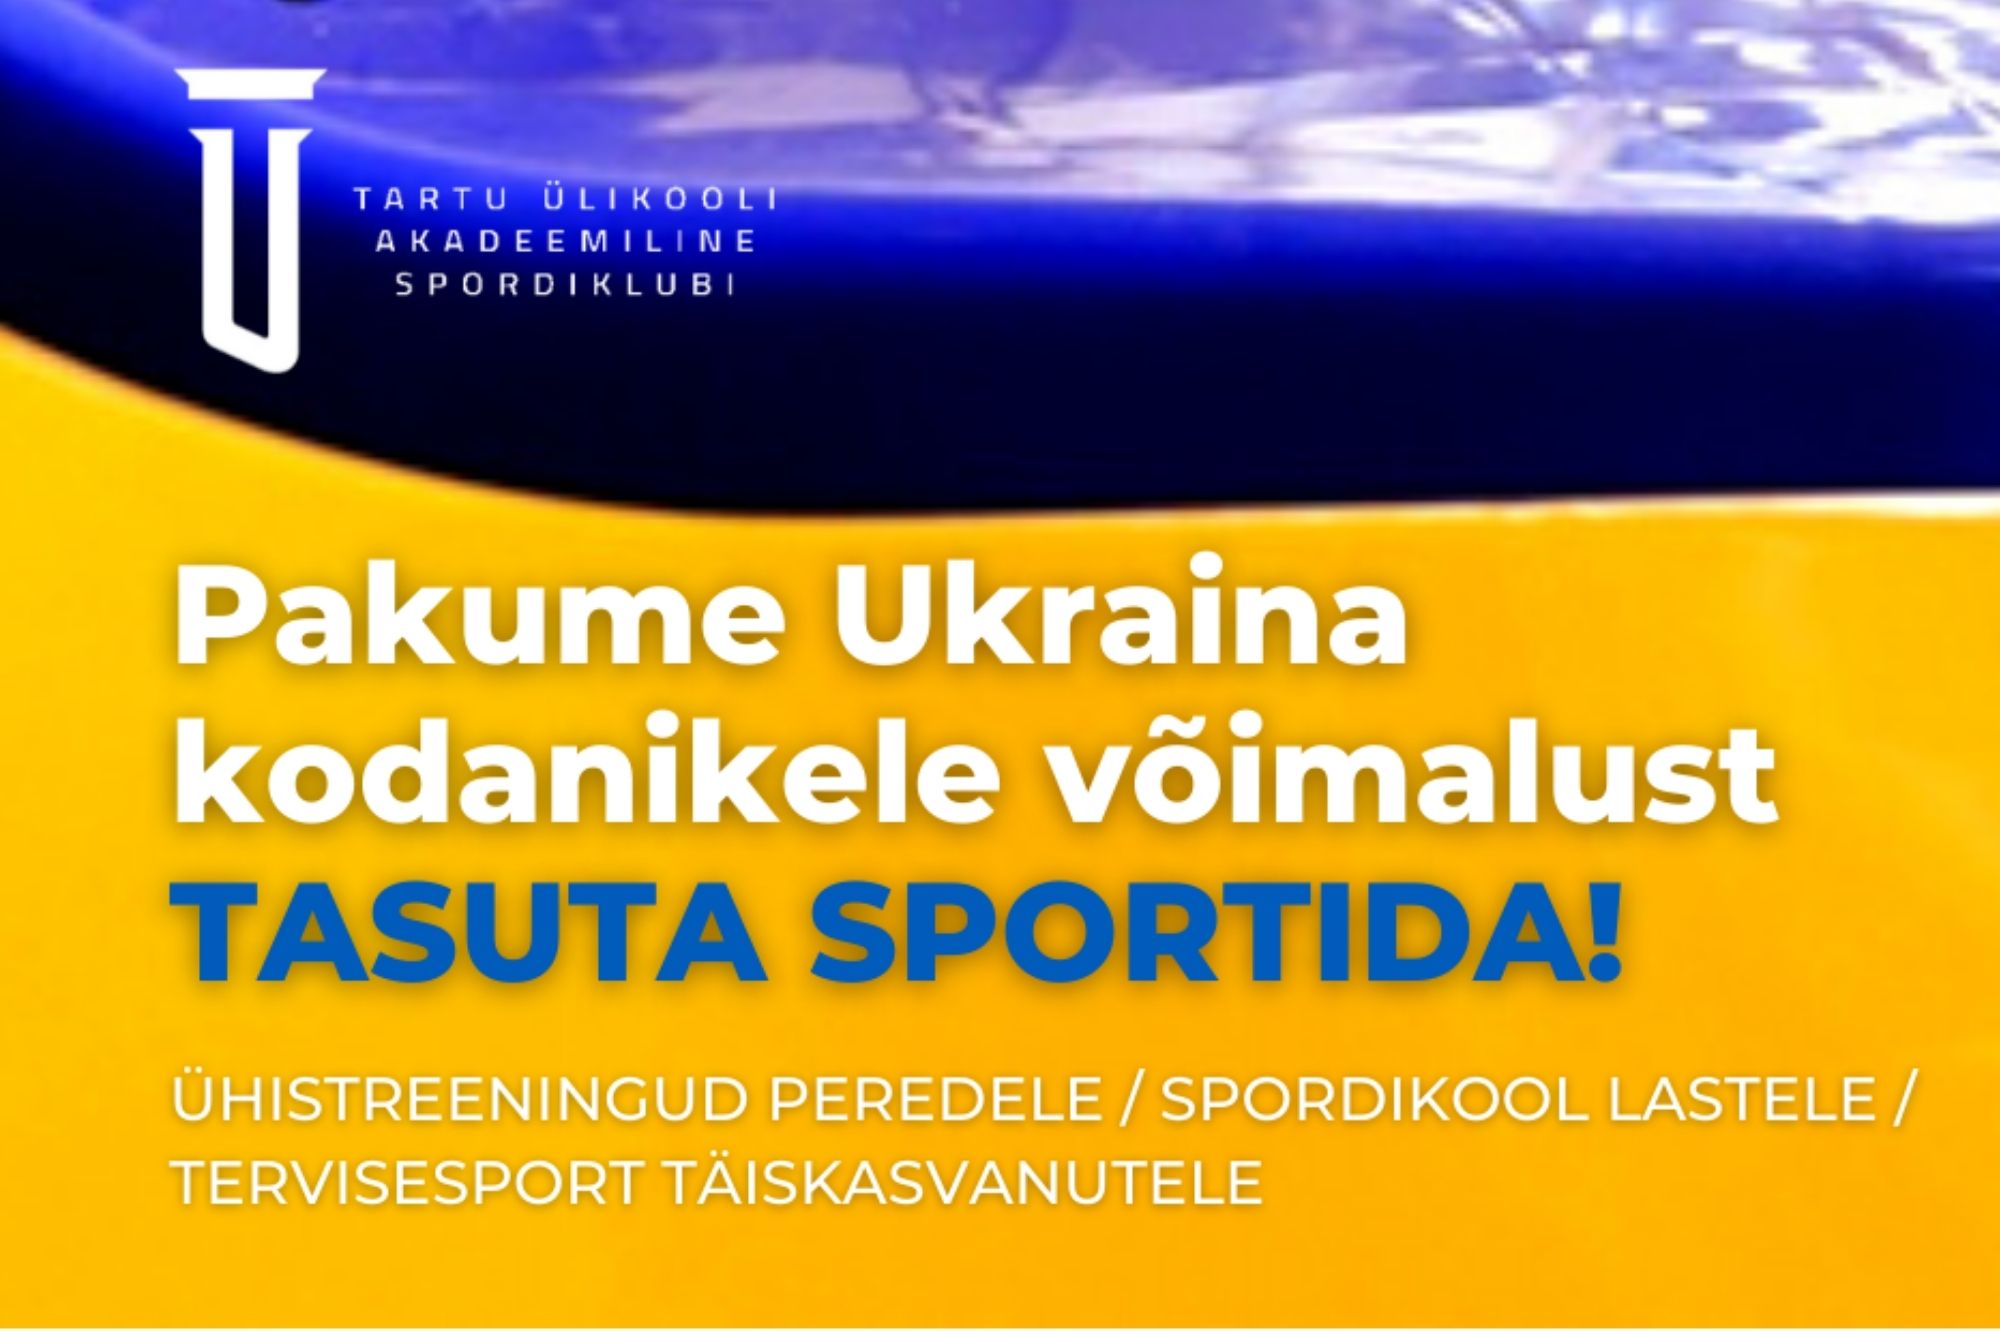 Академический спортивный клуб Тартуского университета приглашает граждан Украины и их детей на бесплатные тренировки! Источник фото: Facebook.